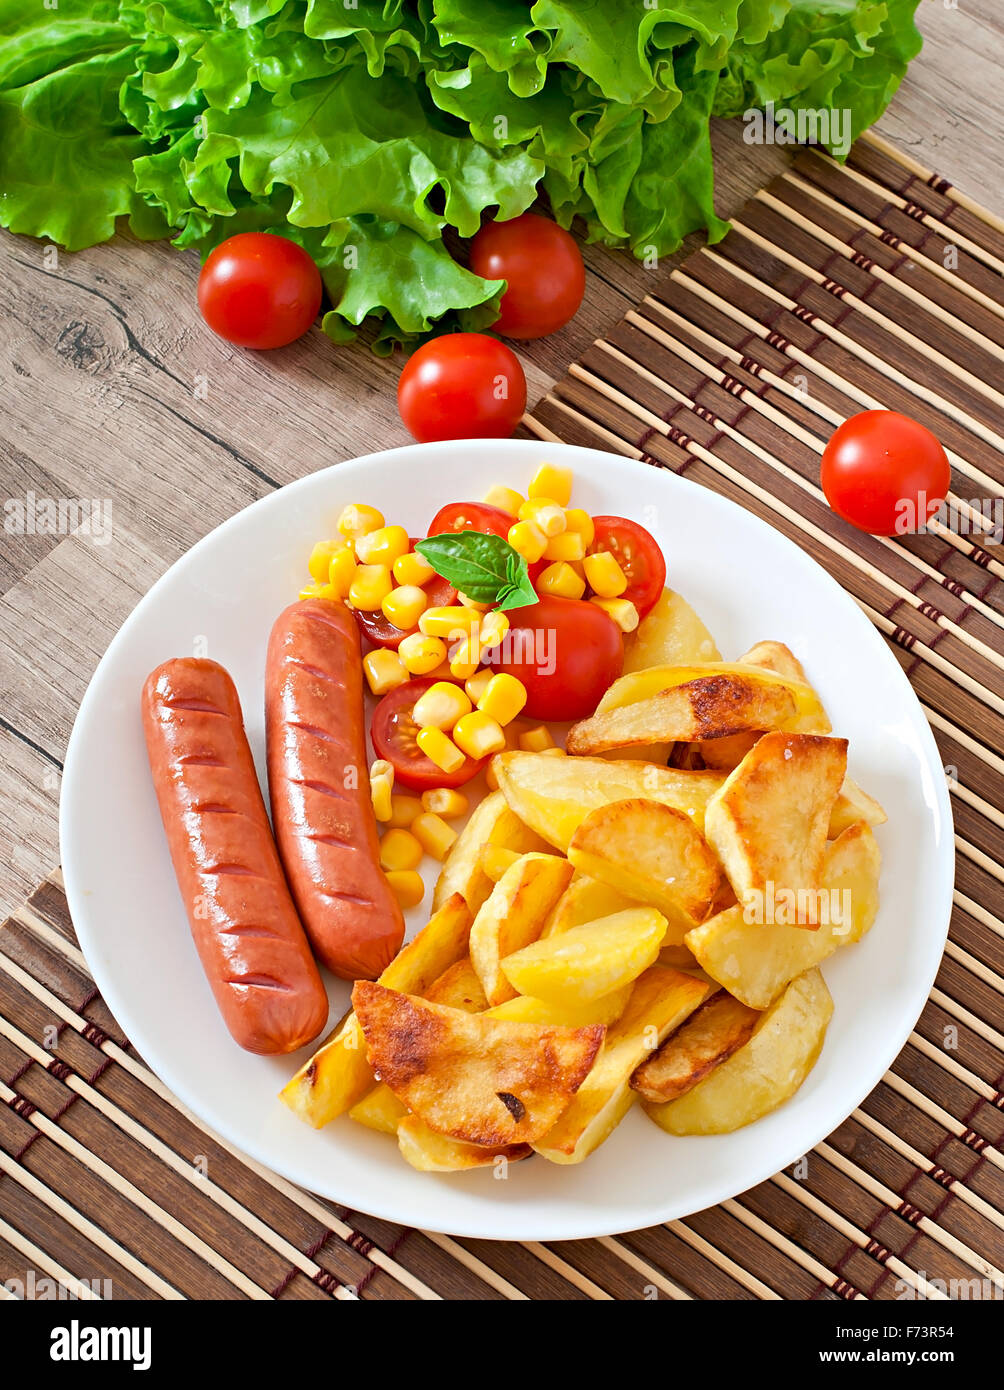 Salchichas con patatas fritas y verduras en una placa Foto de stock